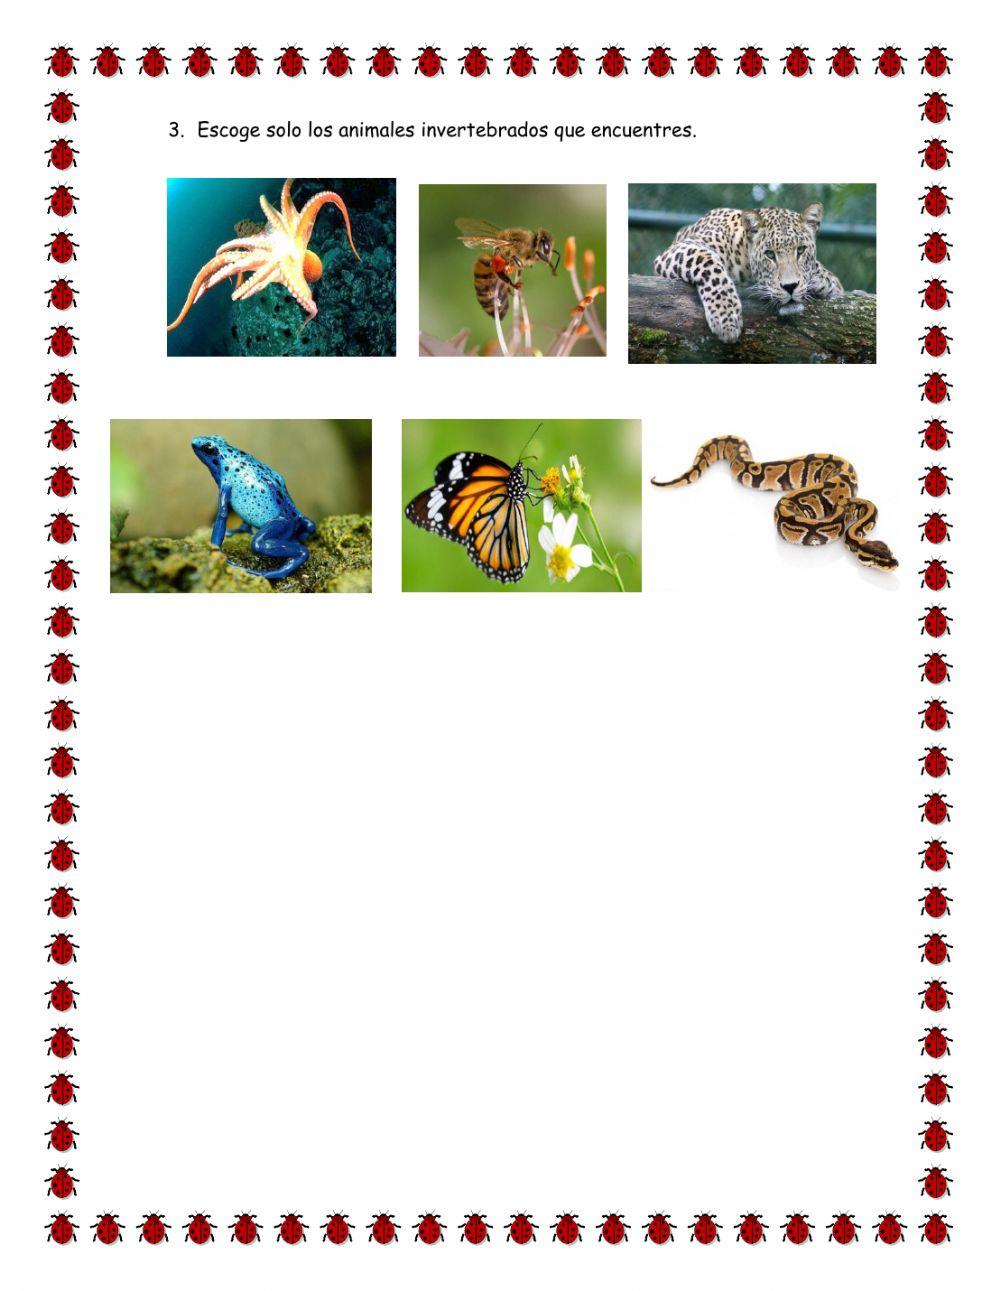 Animales invertebrados